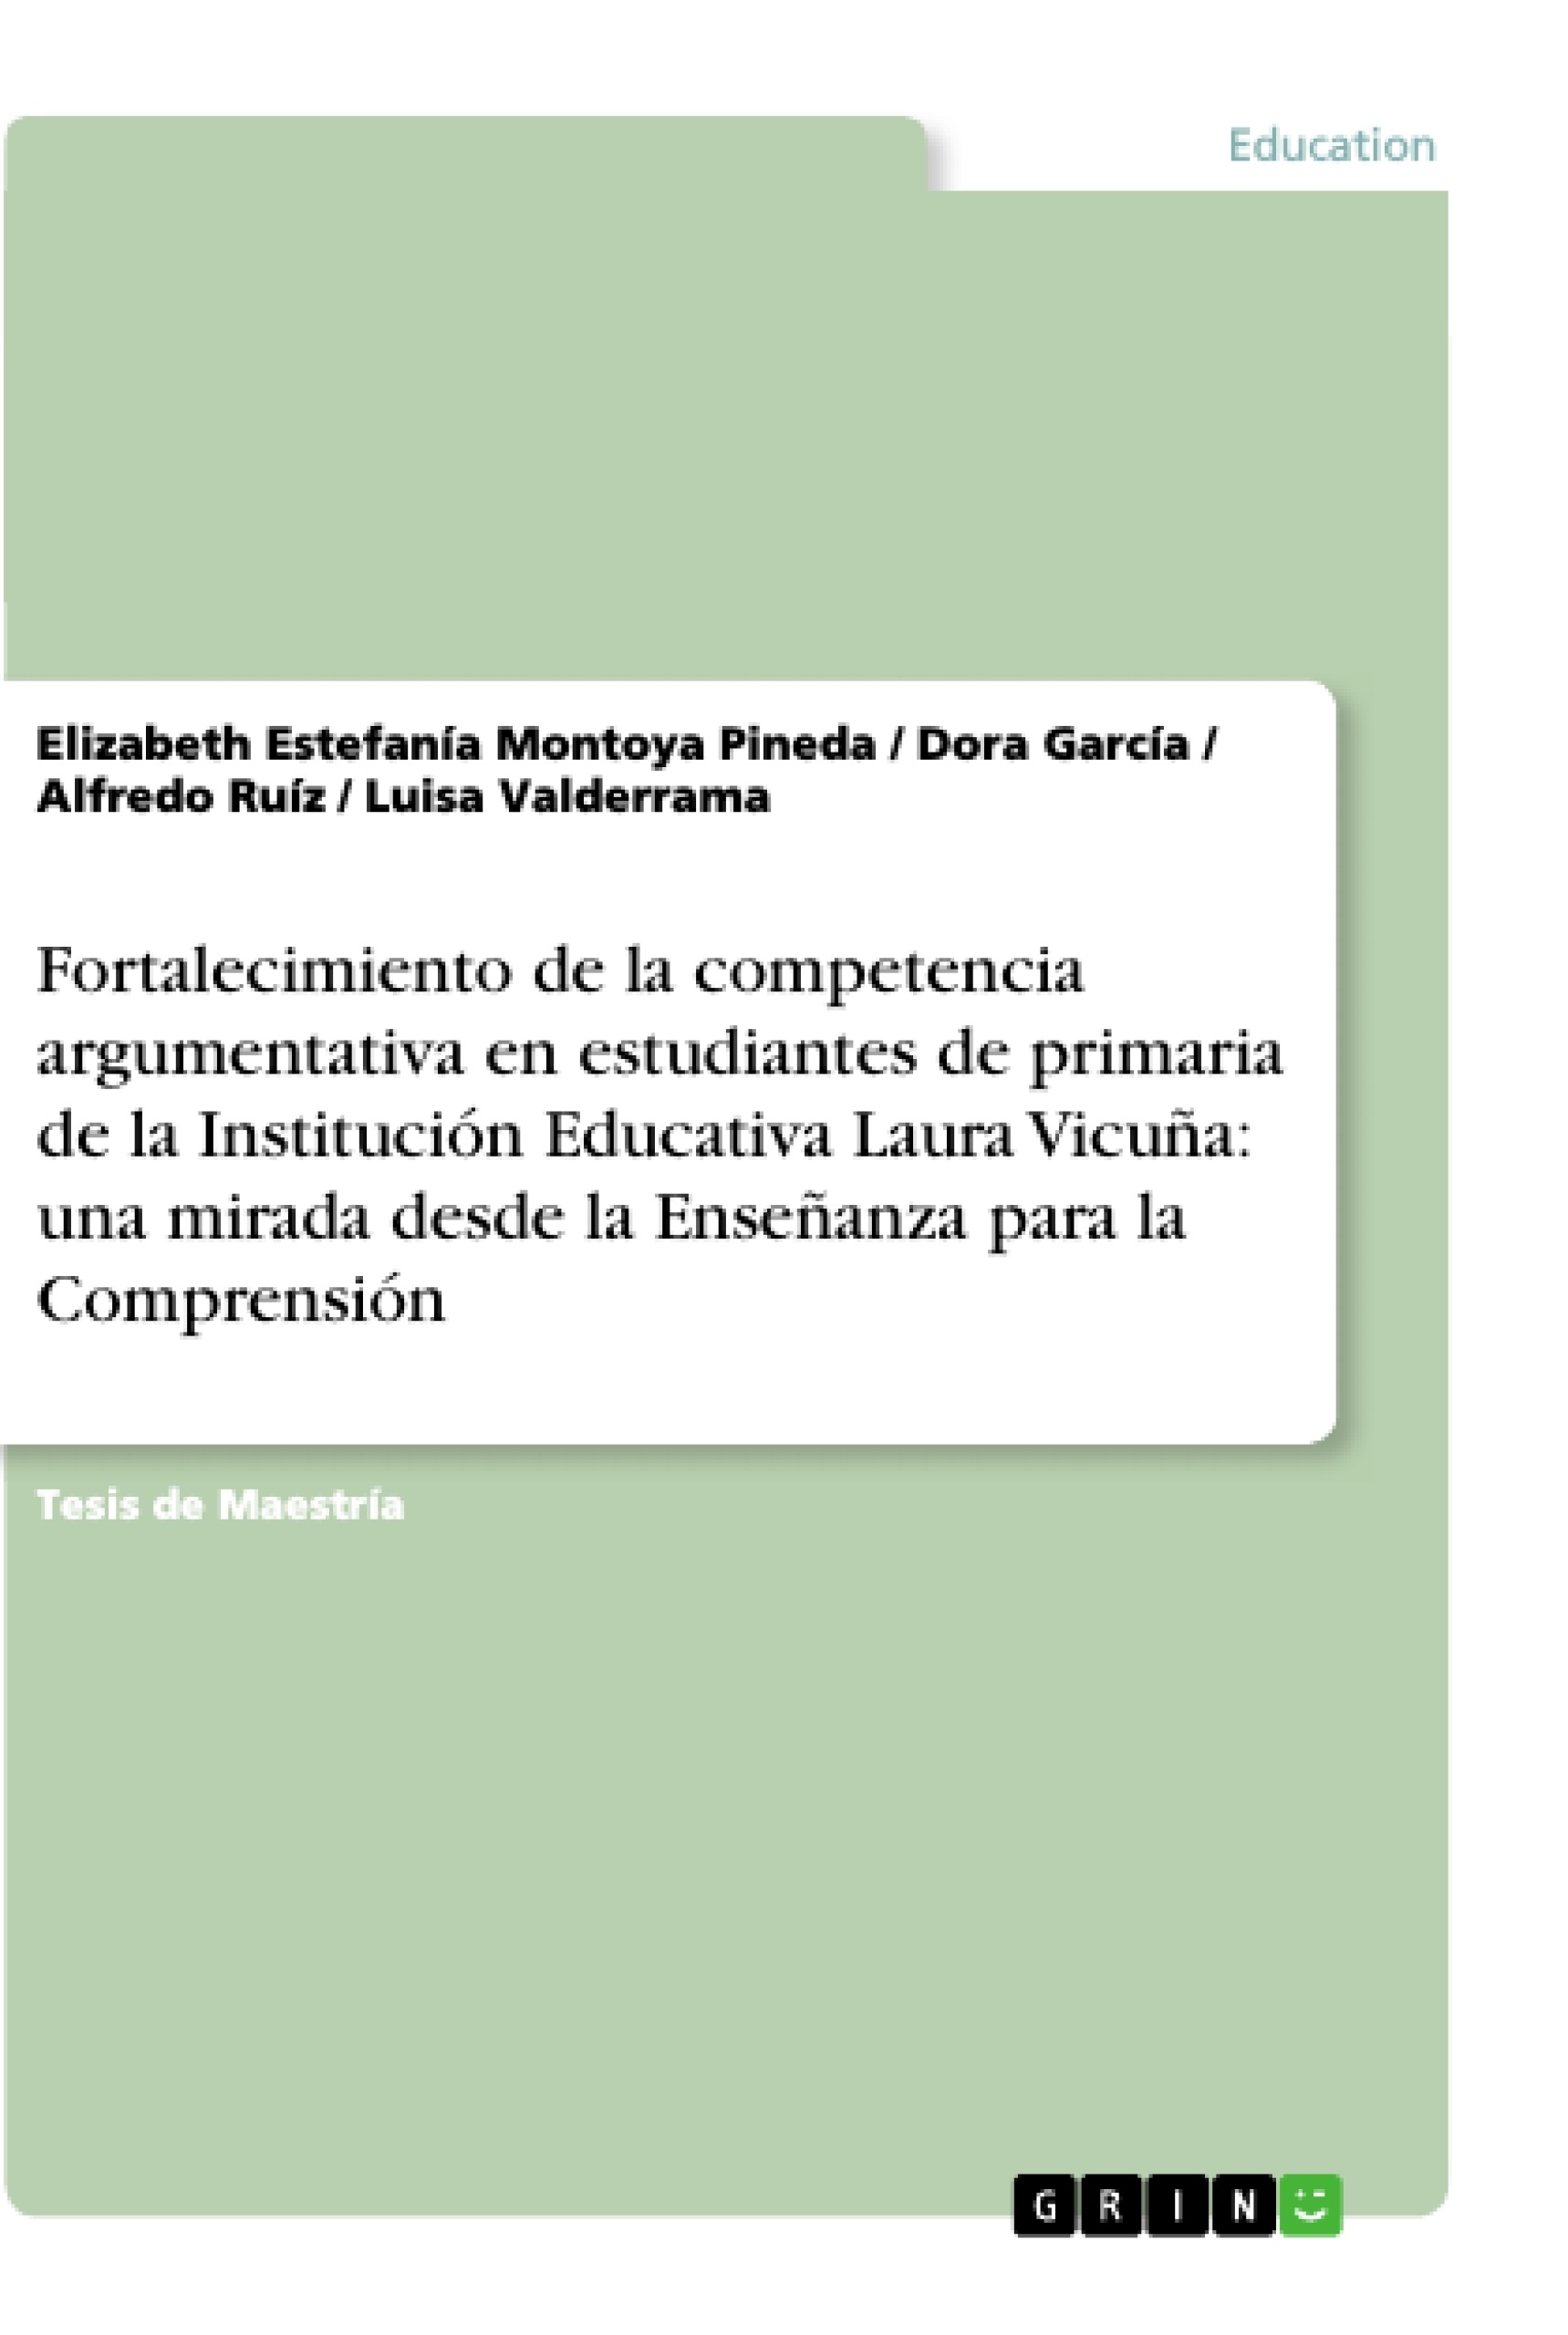 Titre: Fortalecimiento de la competencia argumentativa en estudiantes de primaria de la Institución Educativa Laura Vicuña: una mirada desde la Enseñanza para la Comprensión